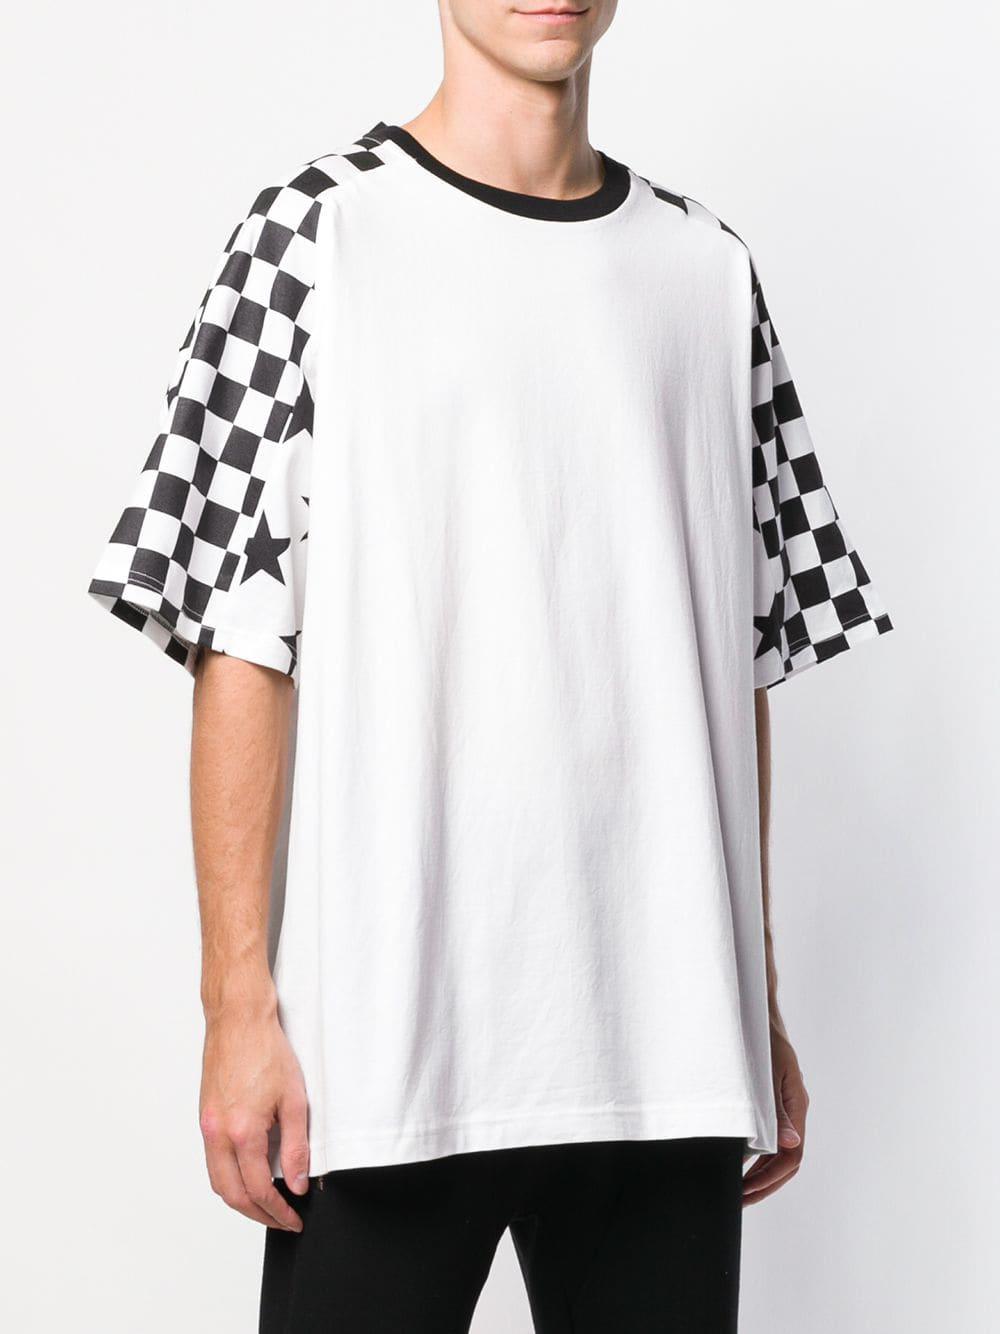 Facetasm Oversized Checkered Sleeve T-shirt in White for Men - Lyst